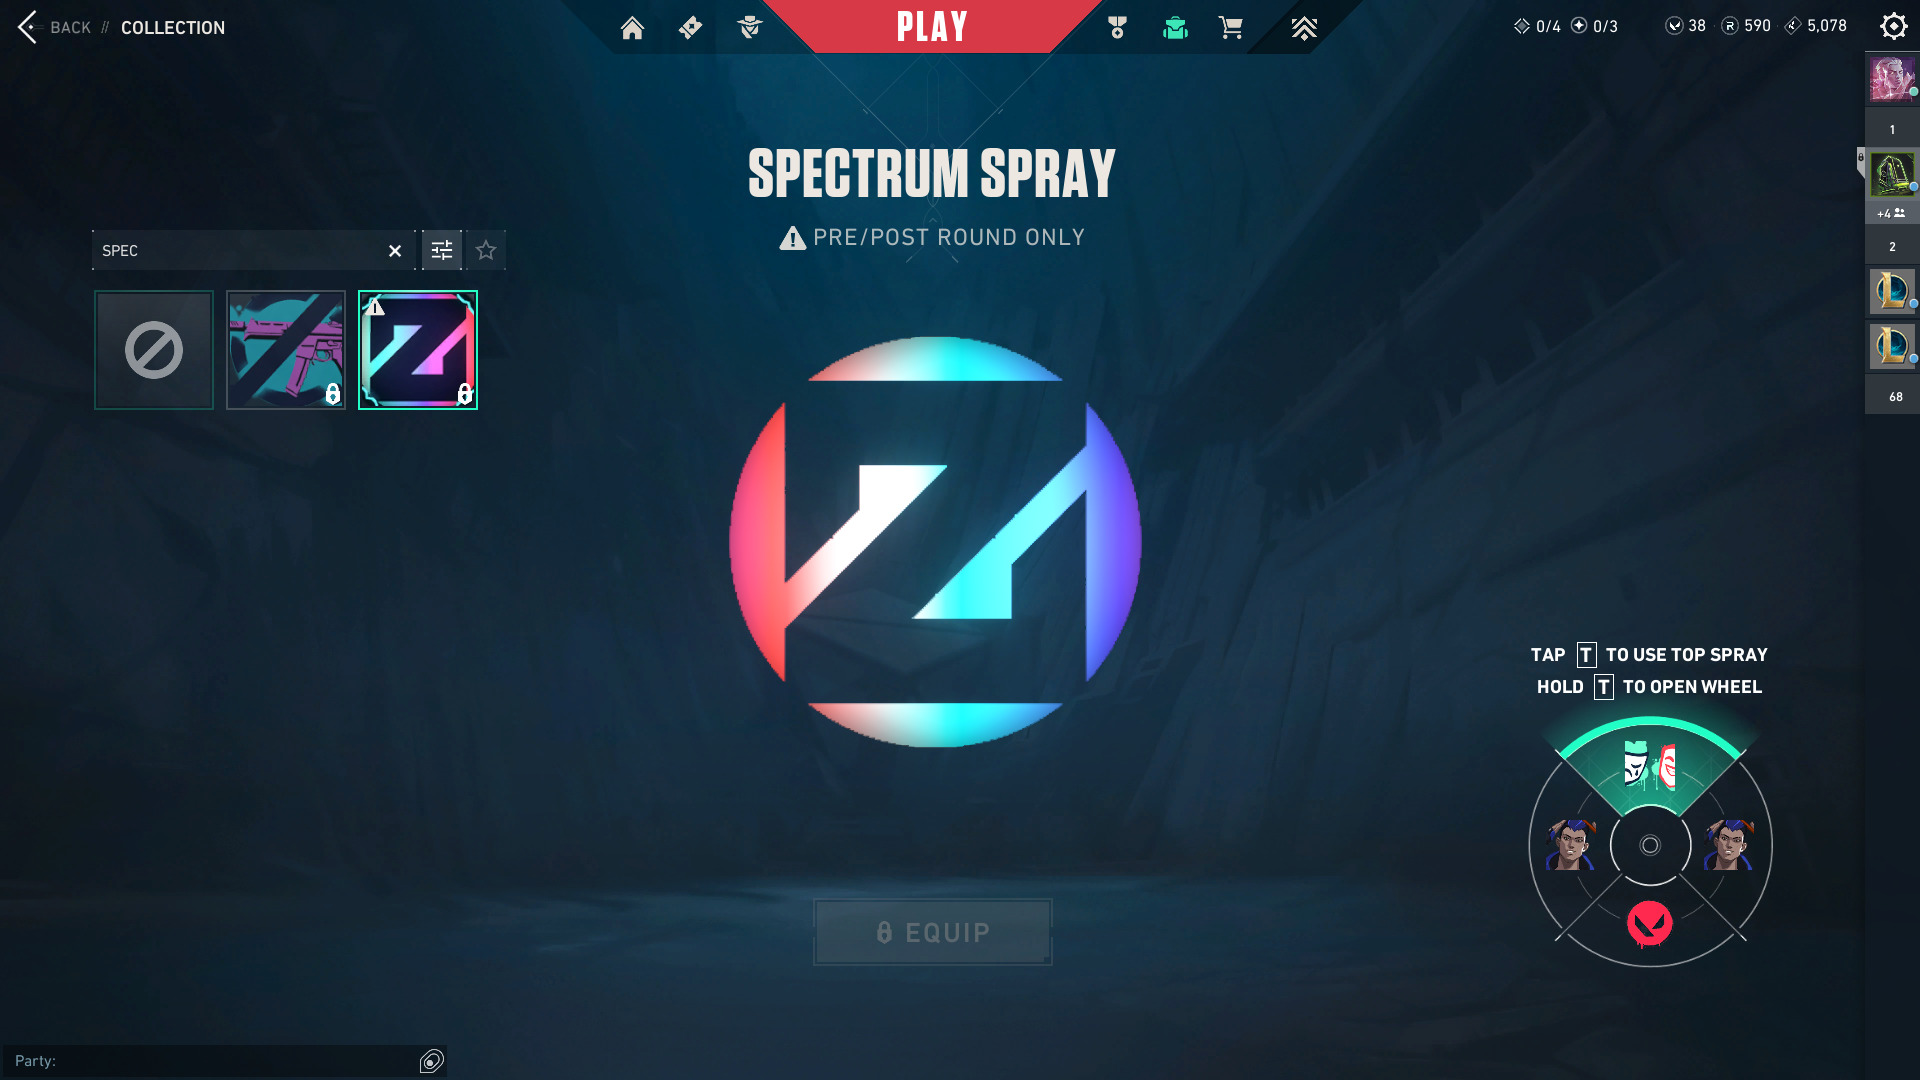 The Zedd skins also features the Spectrum Spray. 